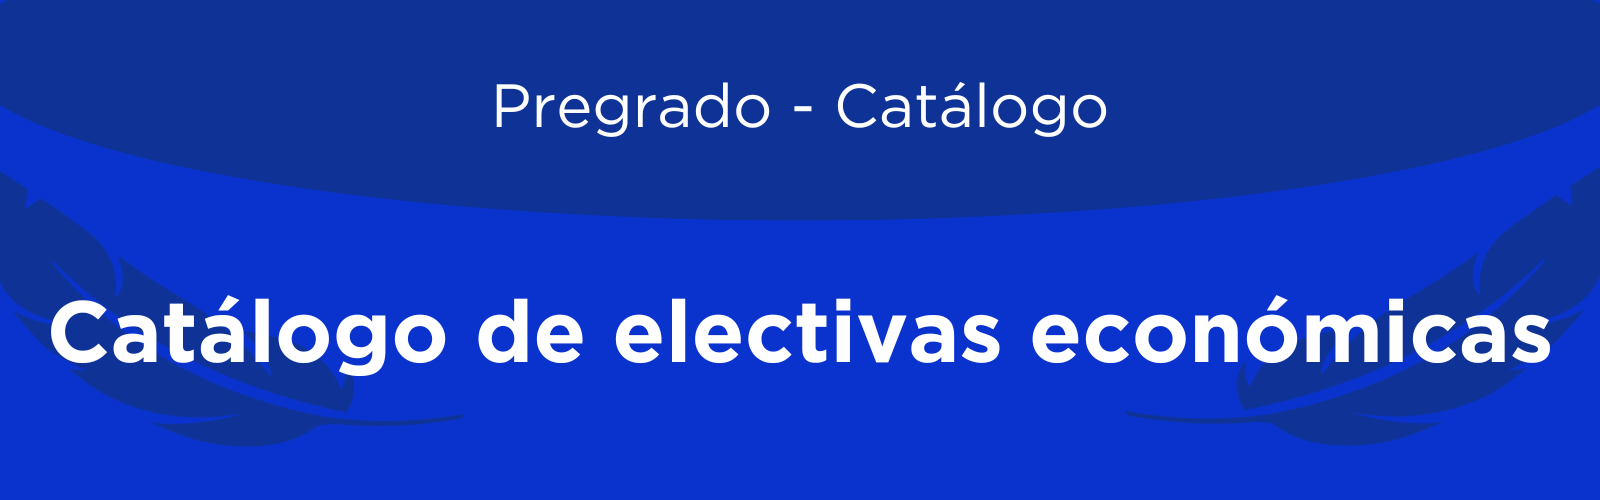 Encabezado-catalogo-electivas.png